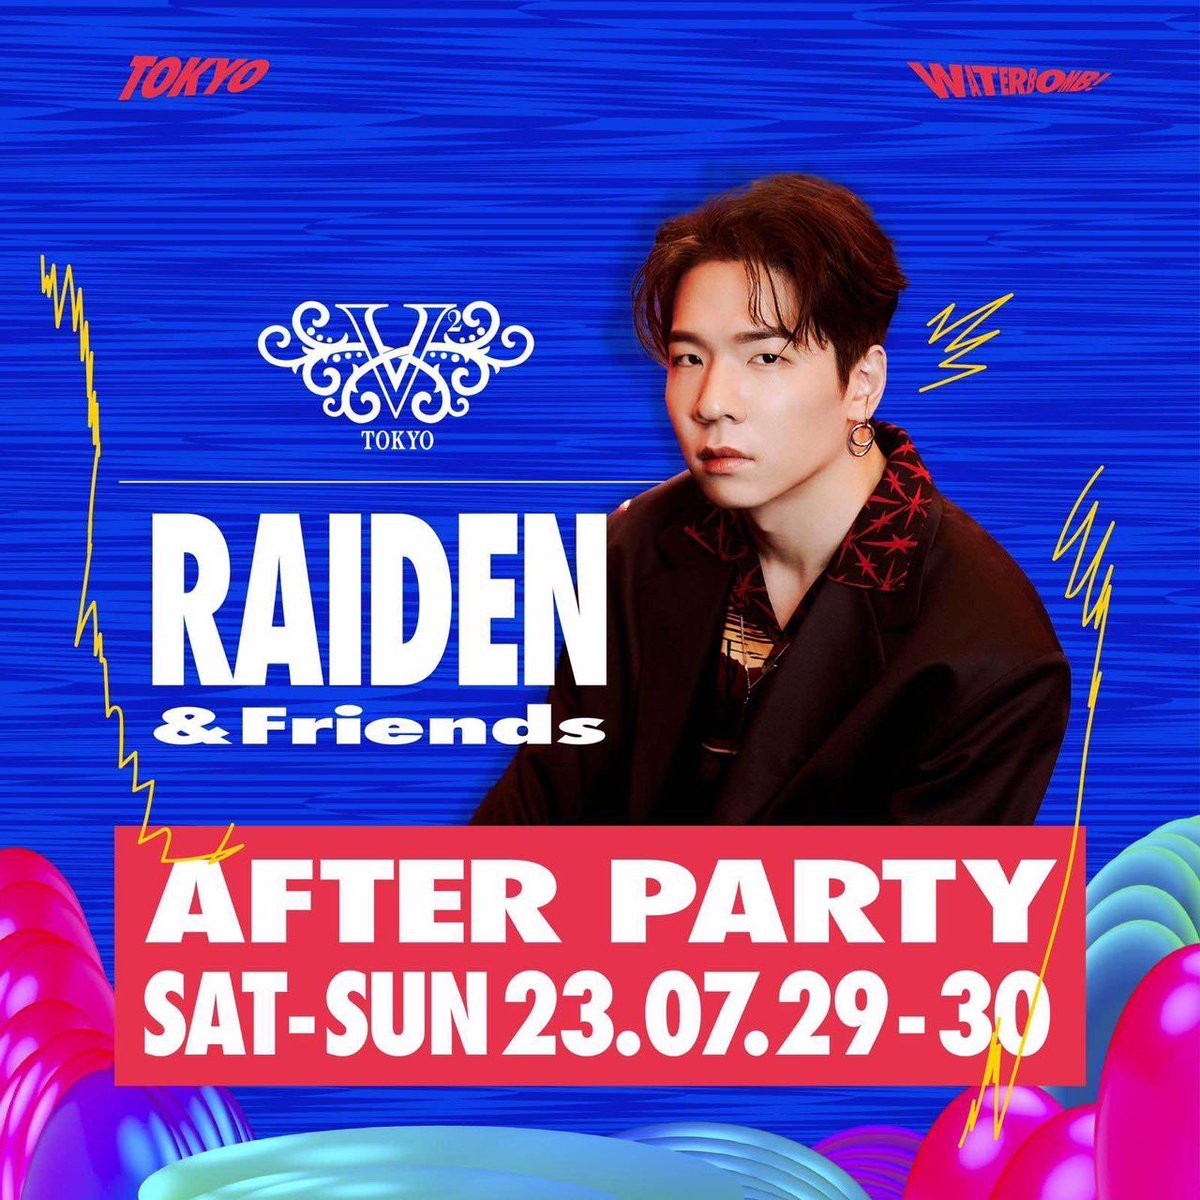 7/29.30(土曜・日曜) @Waterbomb_Japan 𝗔𝗙𝗧𝗘𝗥 𝗣𝗔𝗥𝗧𝗬🍾 with @raidenmusic & Friends 🔥🔥🔥 エネルギーを爆発させる東京ウォーターボム🔥その溢れた熱気を7/29.30(土曜・日曜) の二日間Raidenと友人達がV2TOKYO公式アフターパーティーにて再熱させます！